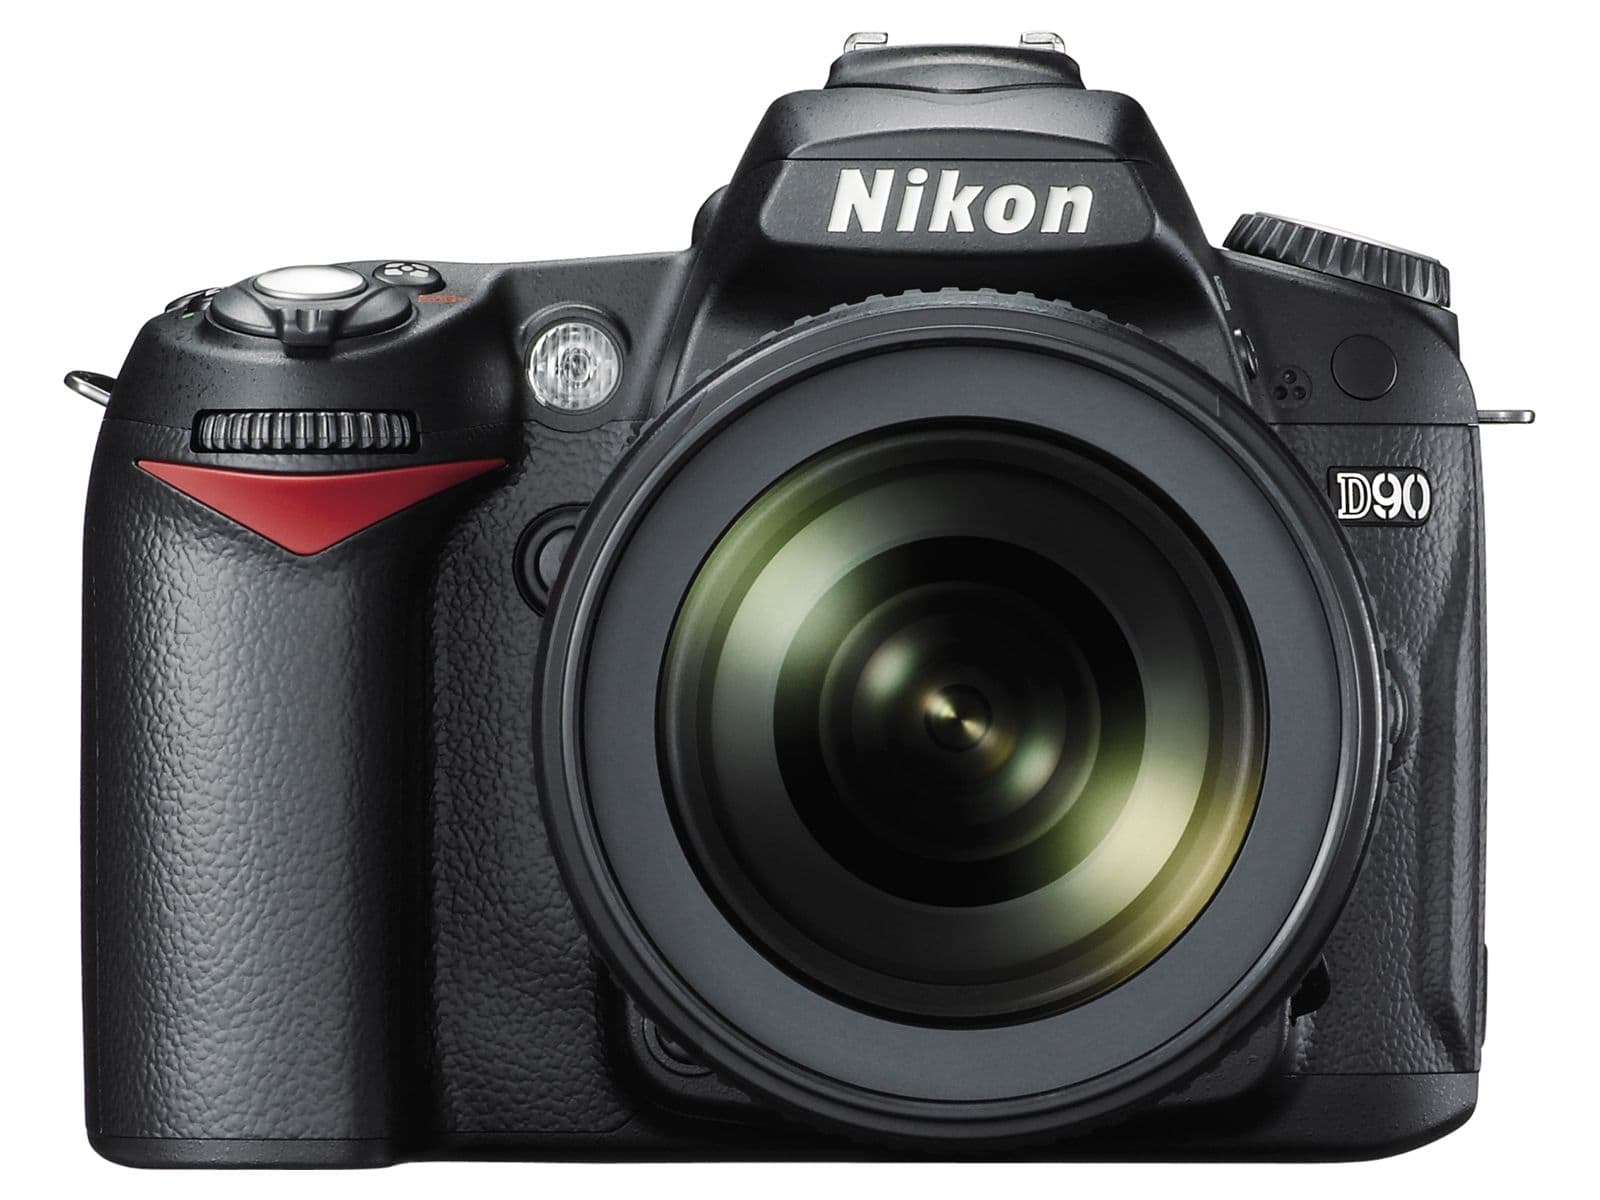 Iconic Nikon cameras - Nikon D90